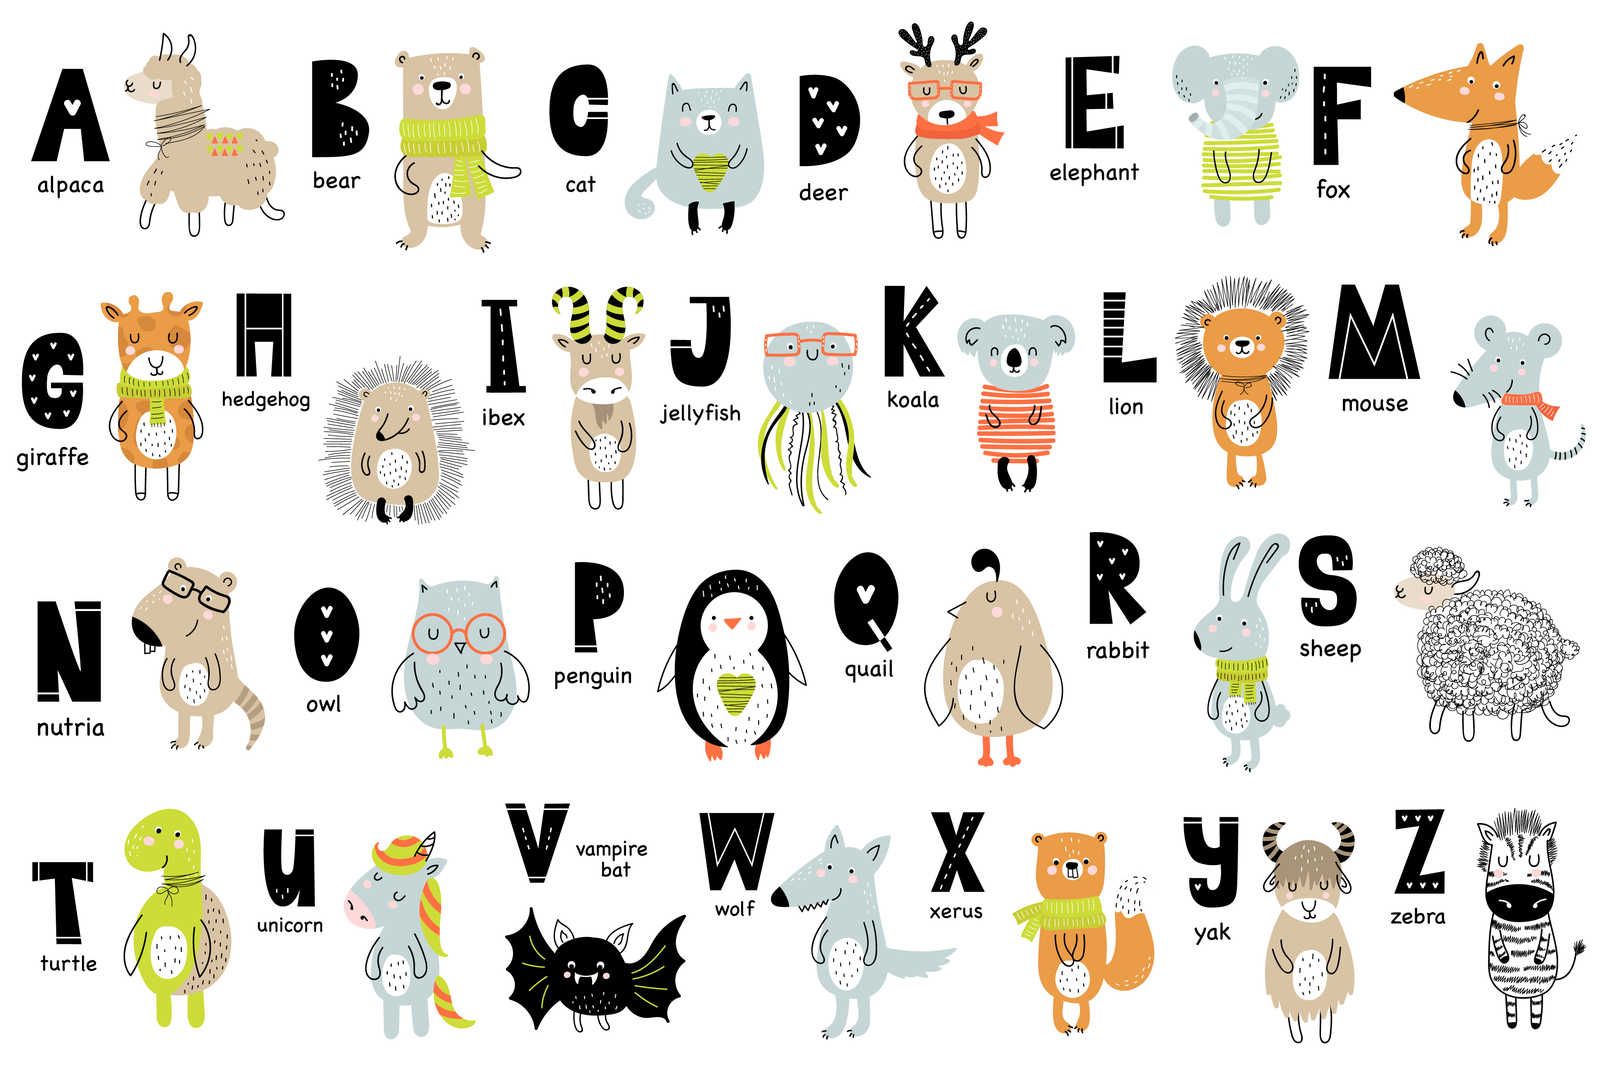             Alfabeto su tela con animali e nomi di animali - 90 cm x 60 cm
        